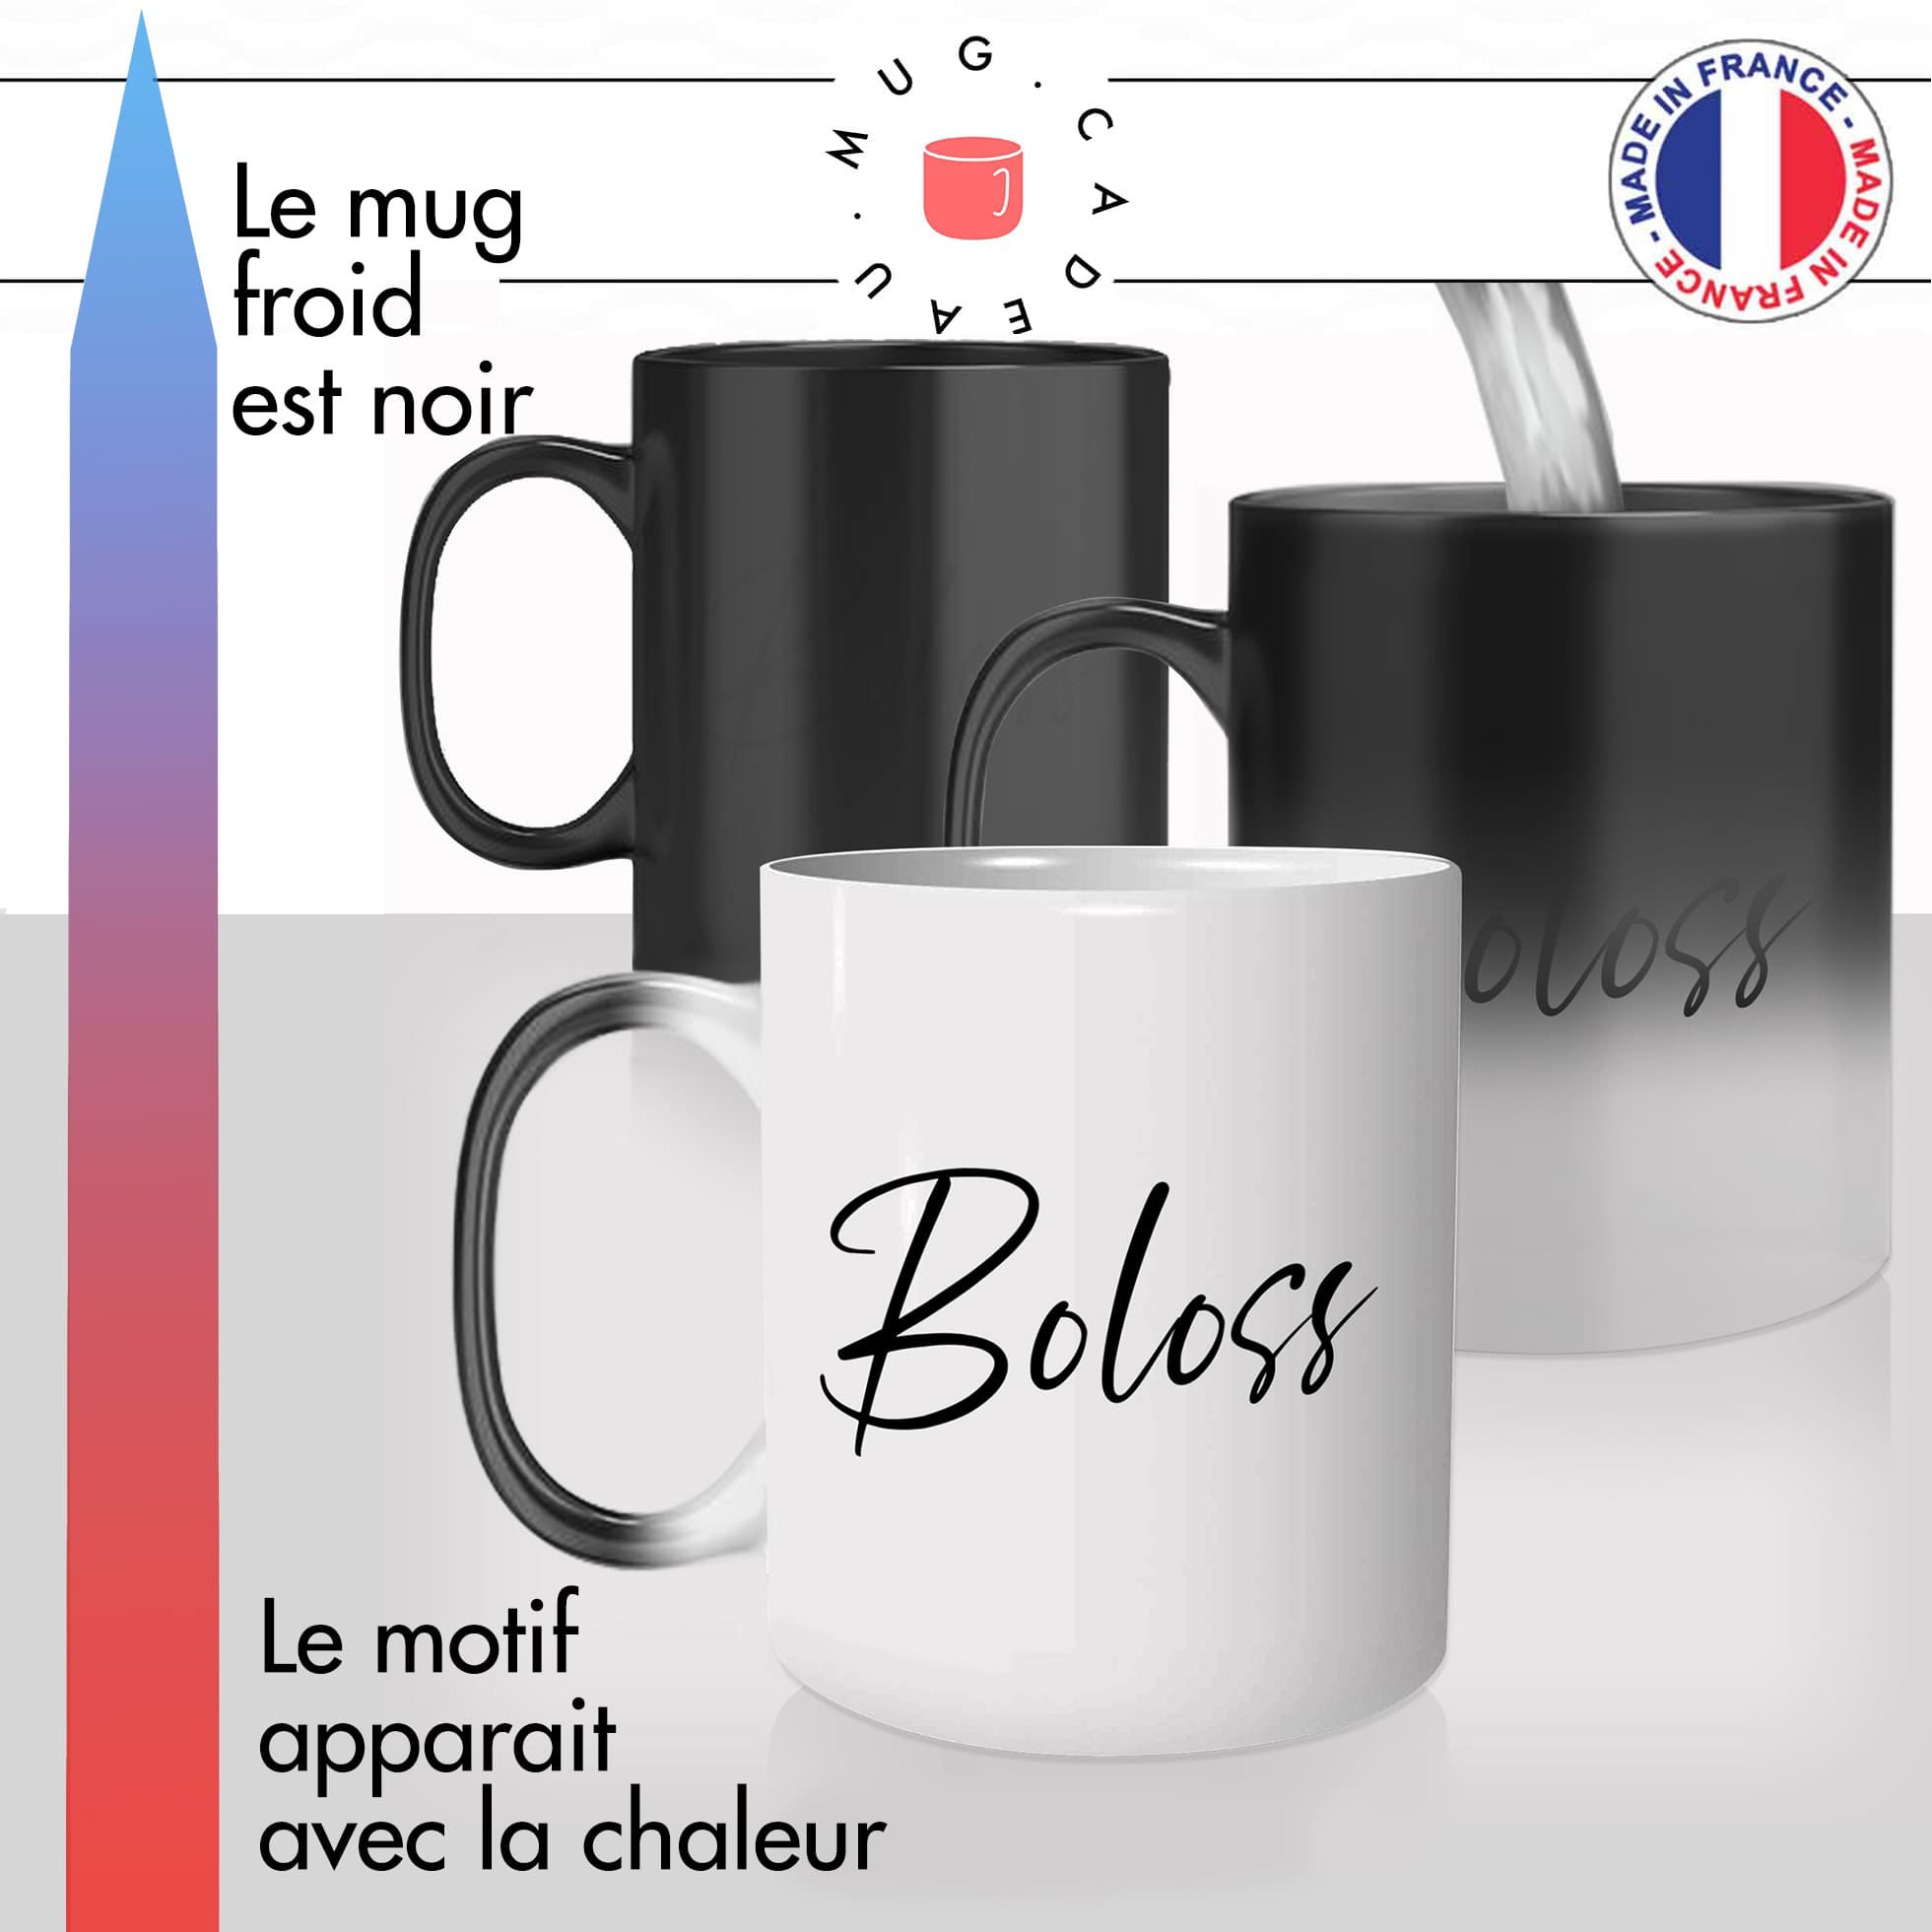 mug-tasse-magique-thermique-cadeau-boloss-homme-bete-debile-con-collegue-ami-chiant-relou-humour-café-thé-personnalisé-personnalisable